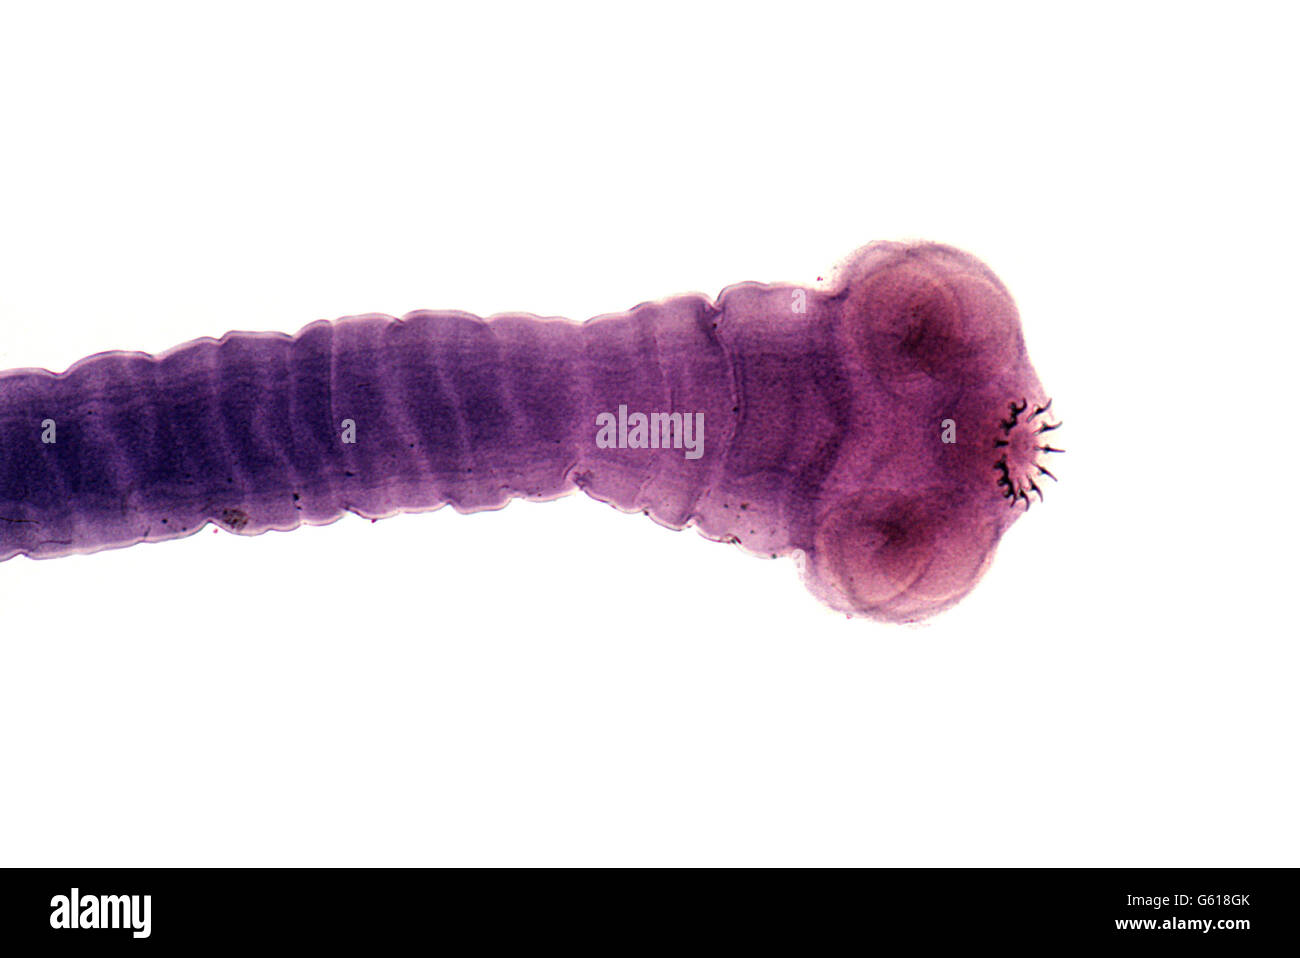 Tapeworm. Scolex (head) of the parasitic pork tape worm, Taenia solium. Stock Photo